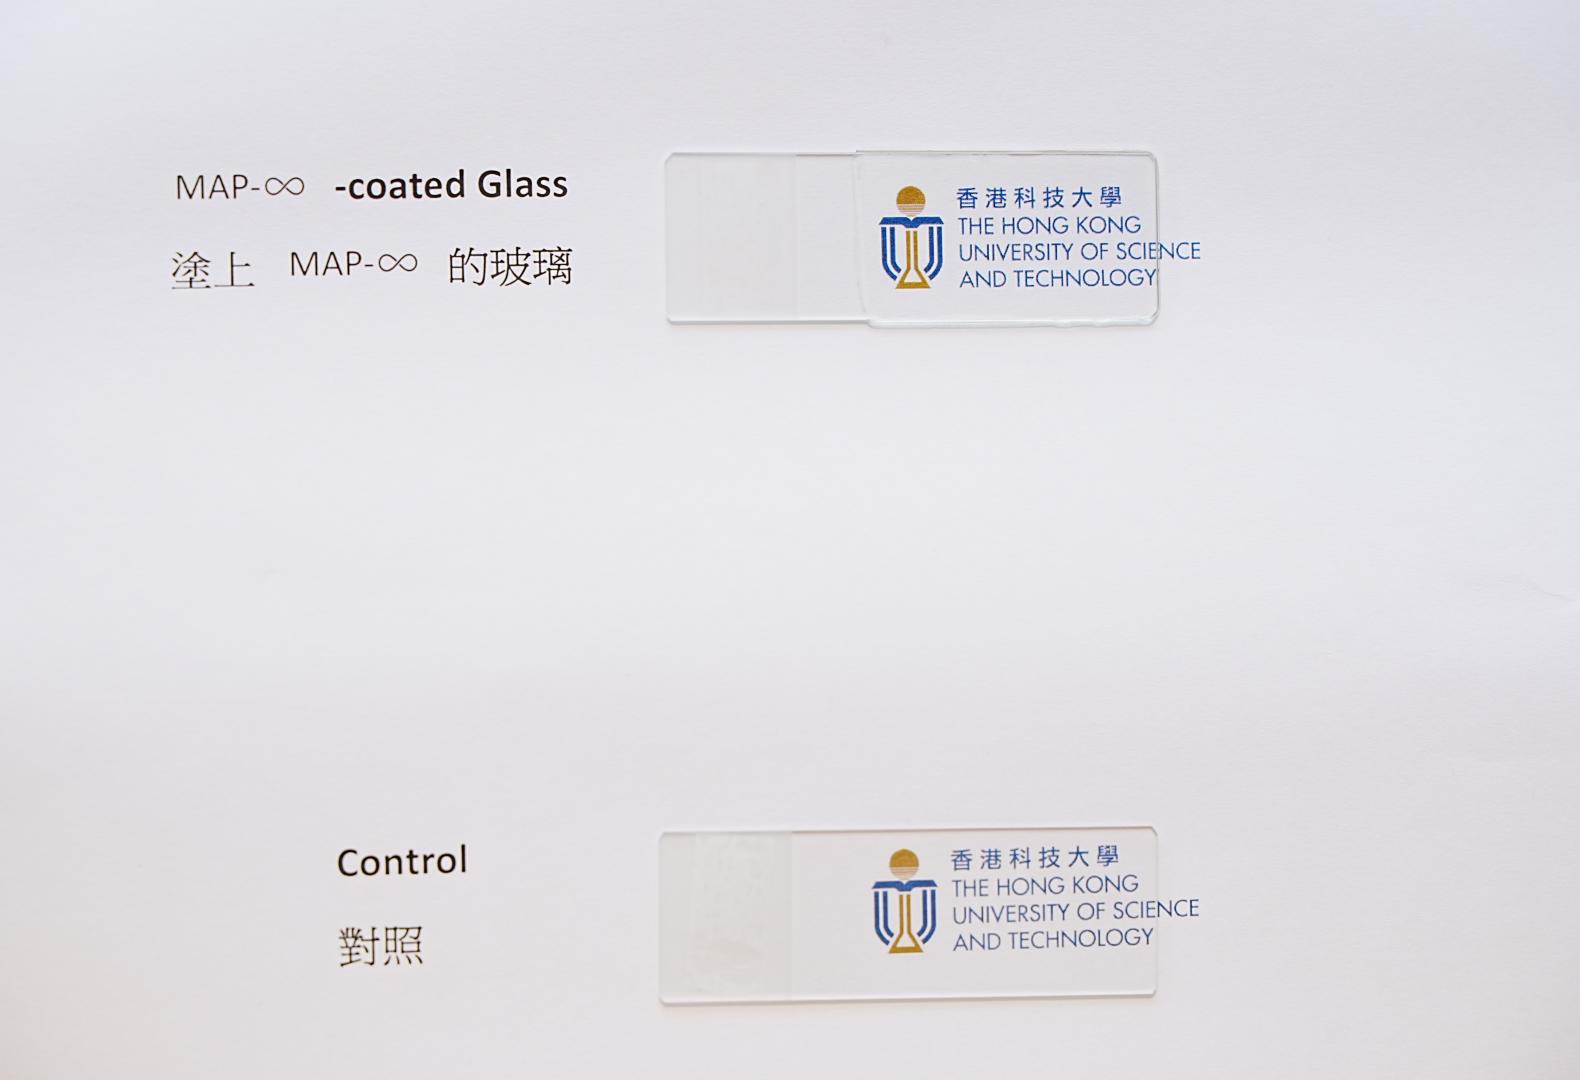 MAP-∞的高透光度讓塗層能應用到在玻璃表面上而不會影響其透明度。